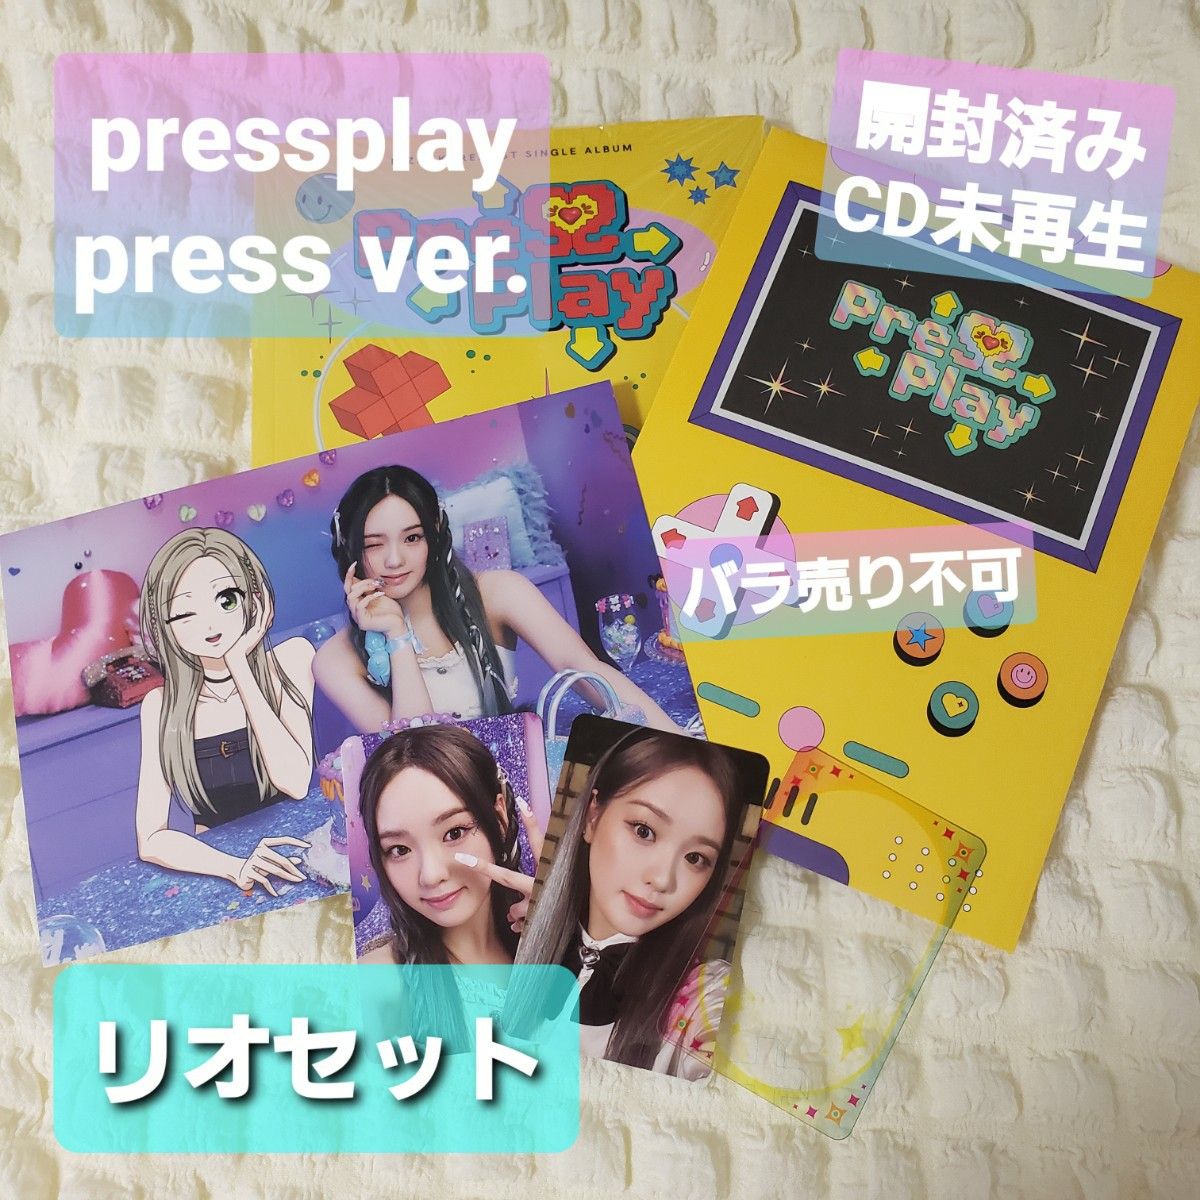 NiziU press play press ver. 開封済 封入特典付き CD未再生 リオセット 韓国デビュー